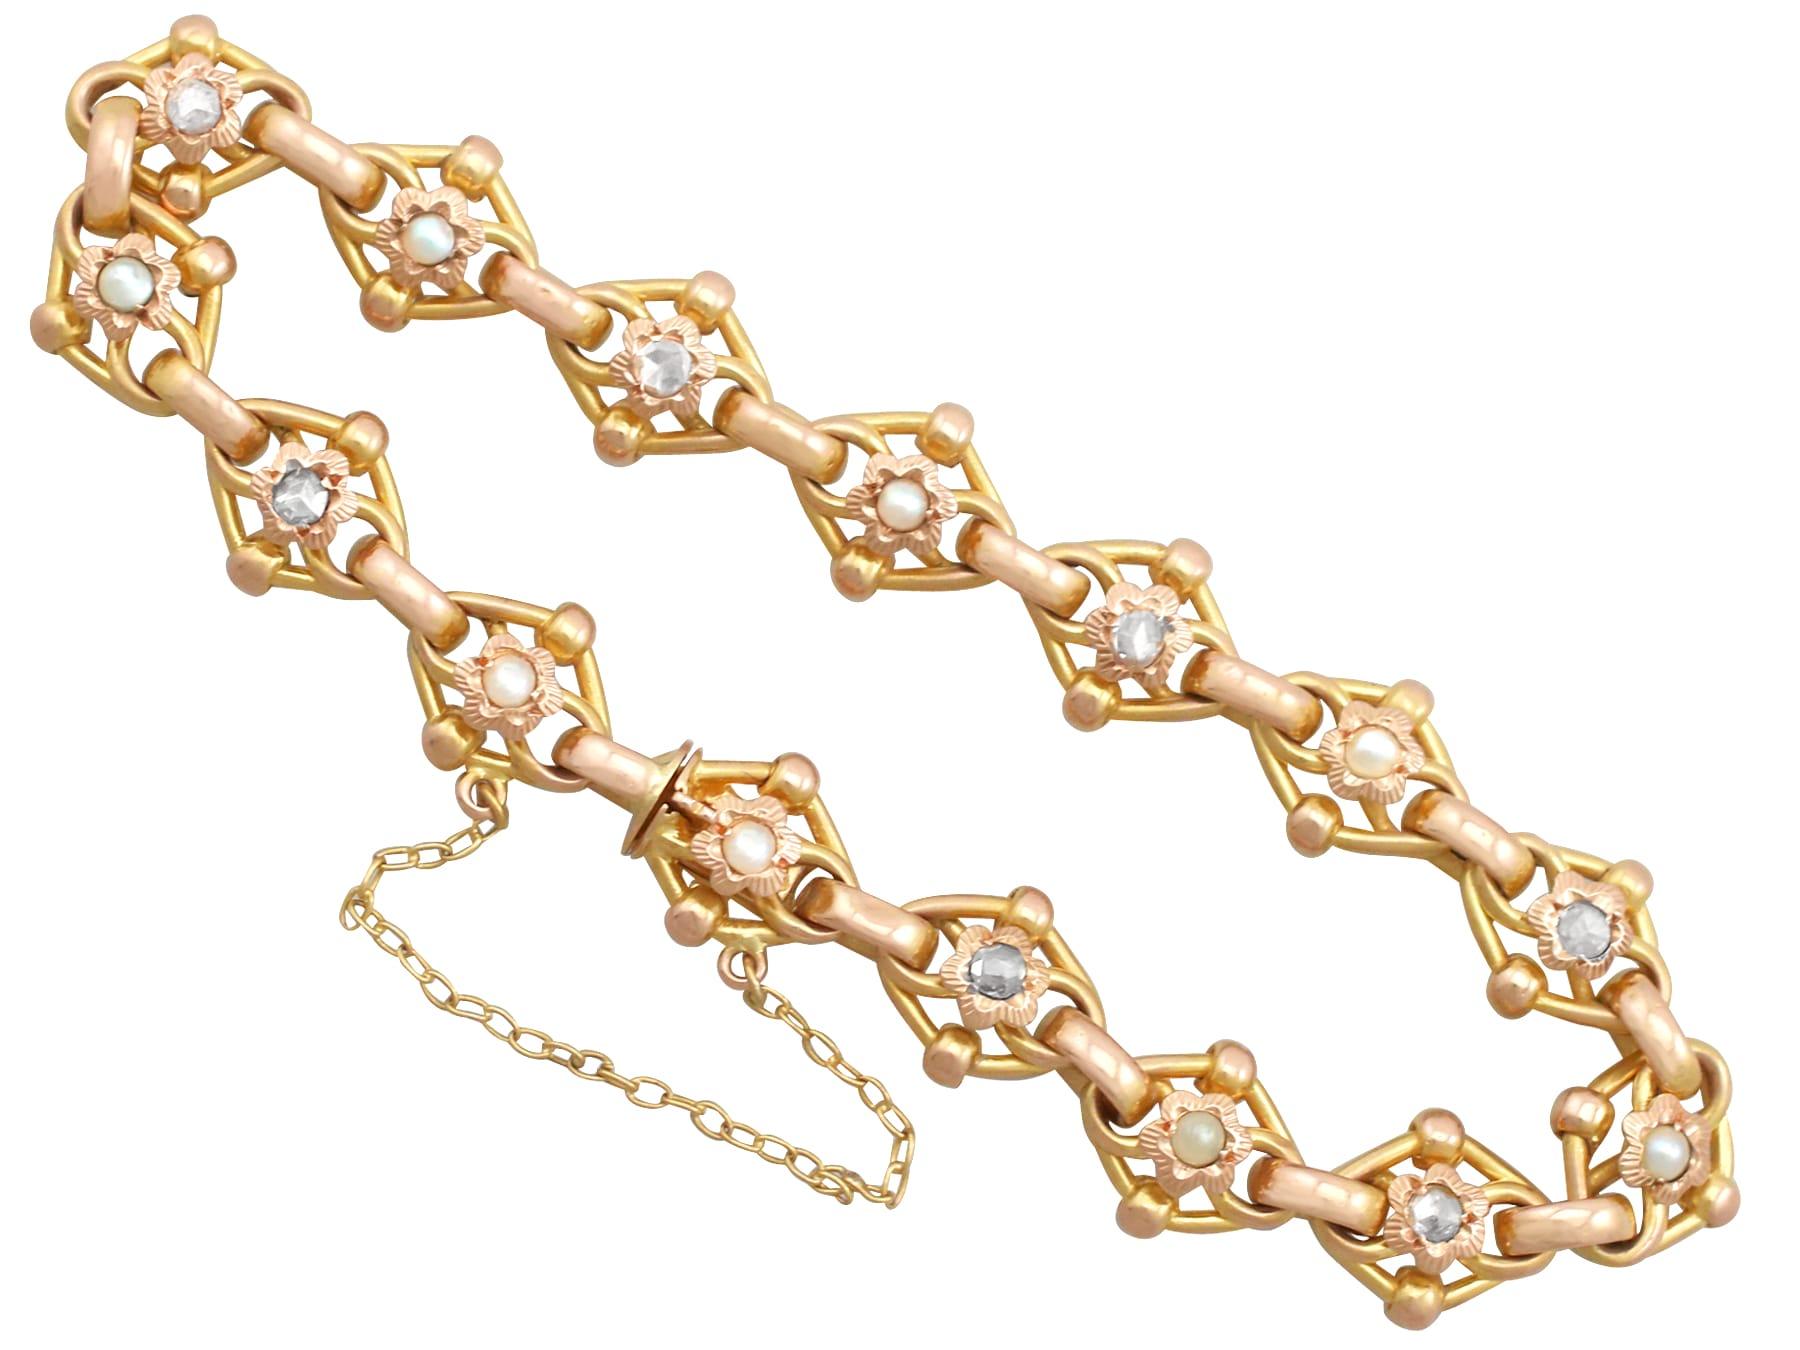 Eine beeindruckende antike Perle und 2,61 Karat Diamanten, 9k Gelbgold Armband; Teil unserer vielfältigen antiken Schmuck und Estate Jewelry Sammlungen.

Dieses feine und beeindruckende antike Perlen- und Diamantarmband wurde in 9 Karat Gelbgold